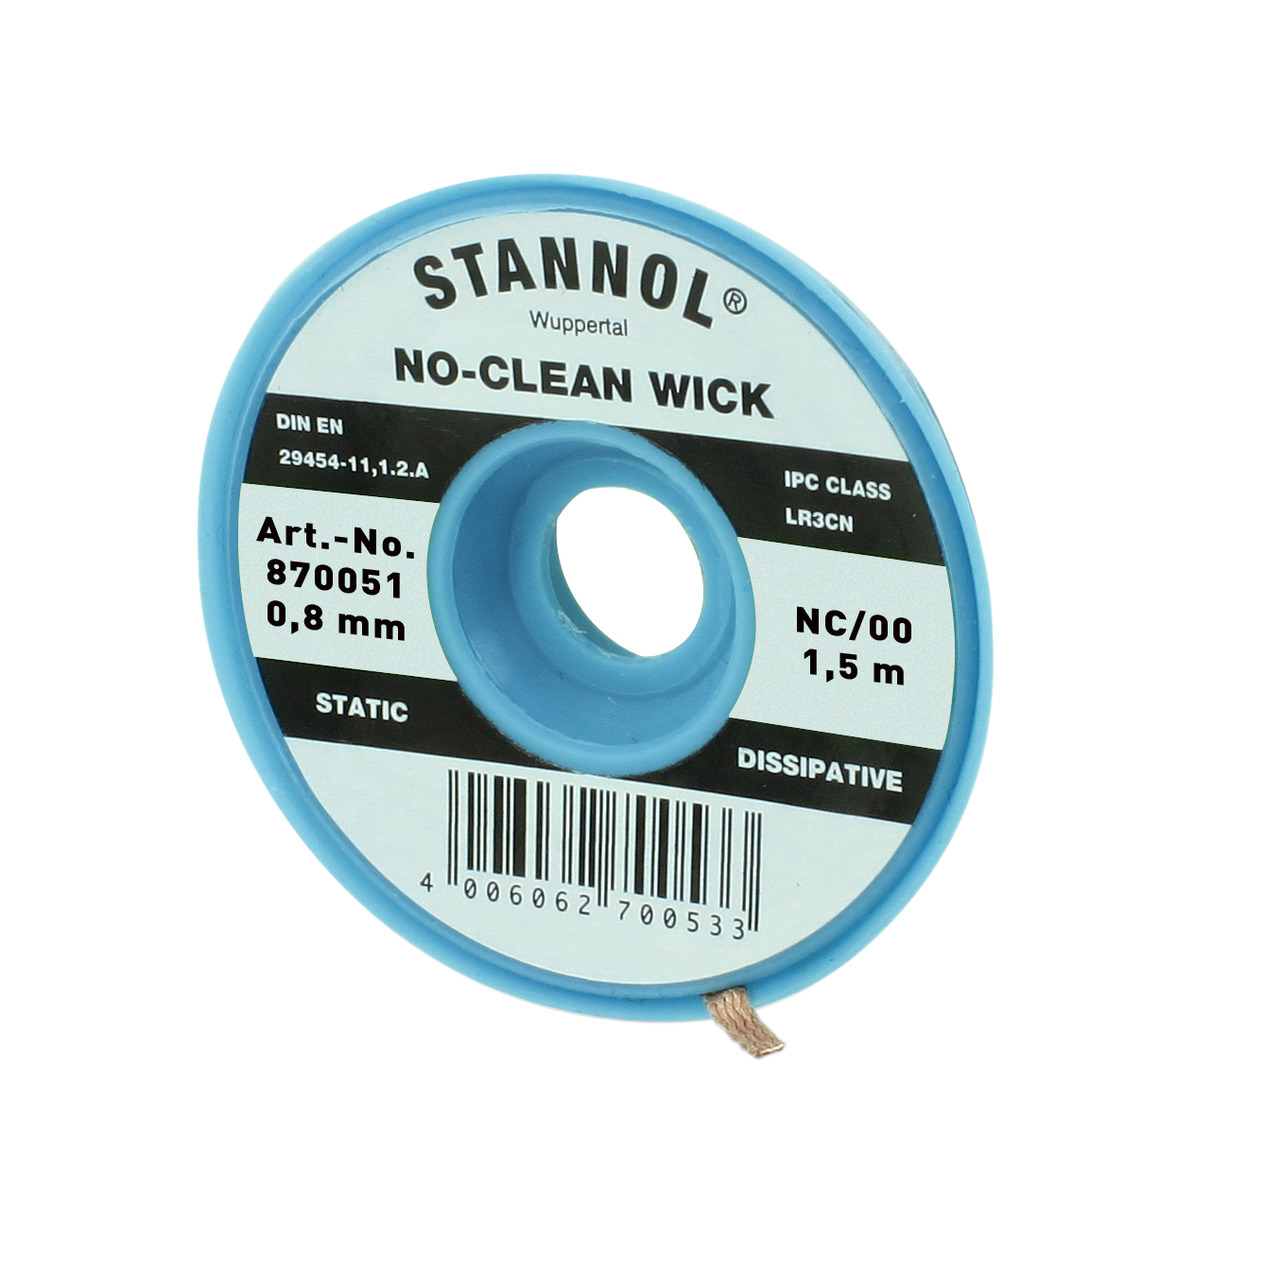 Stannol No-Clean Entltlitze- ESD-verpackt- 1-5 m lang- 0-8 mm breit